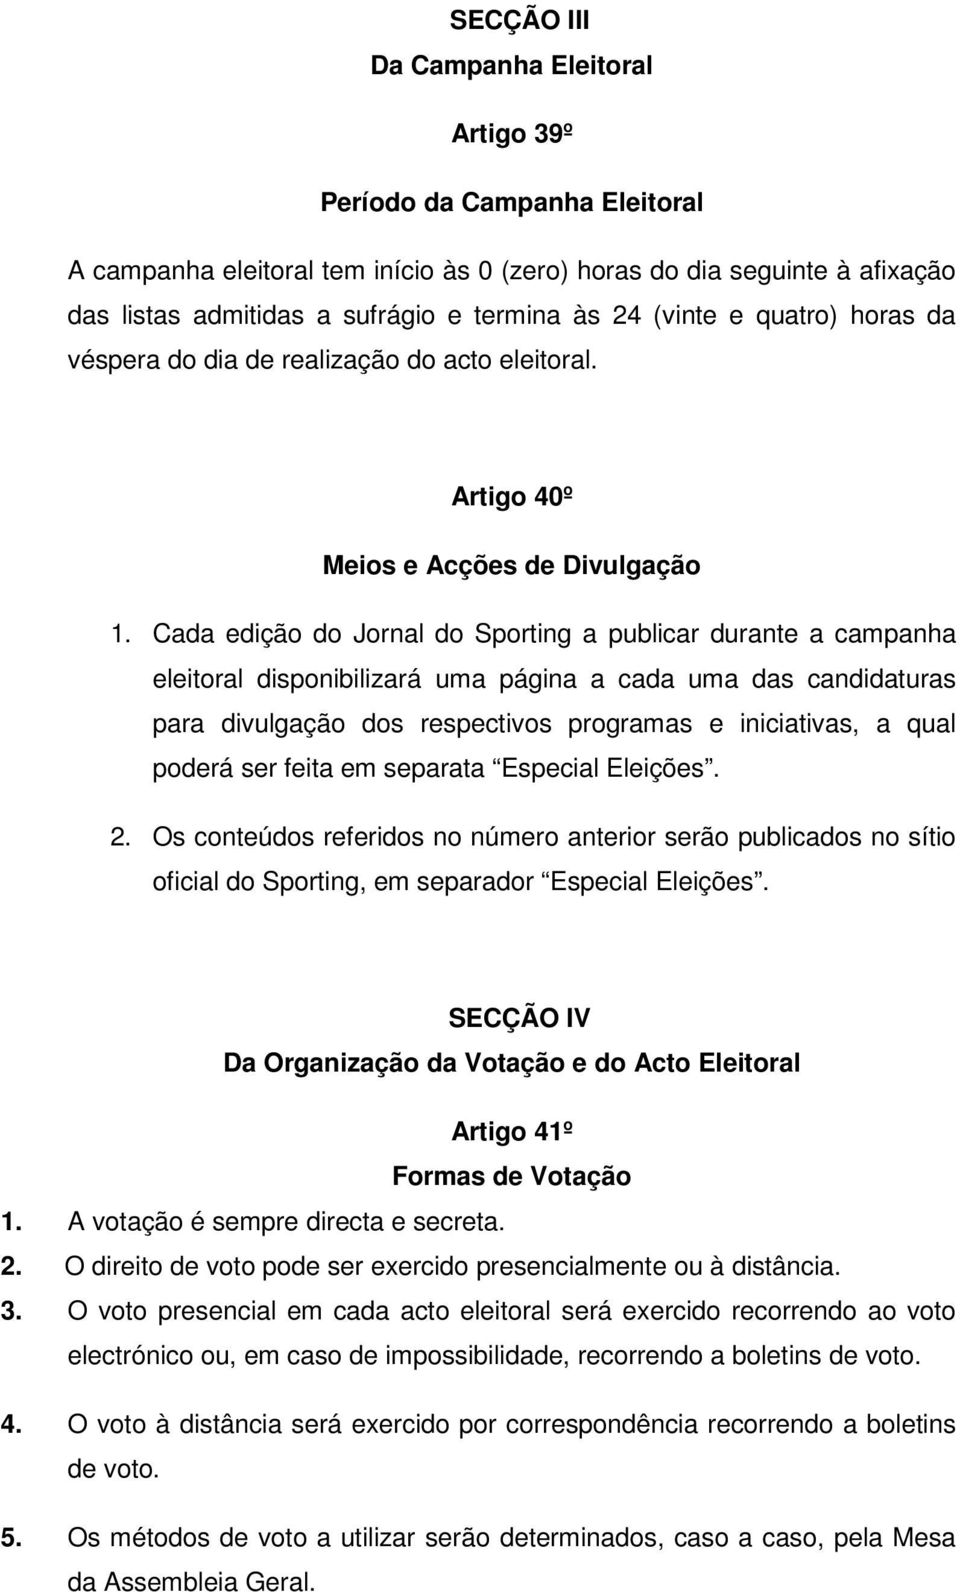 Cada edição do Jornal do Sporting a publicar durante a campanha eleitoral disponibilizará uma página a cada uma das candidaturas para divulgação dos respectivos programas e iniciativas, a qual poderá